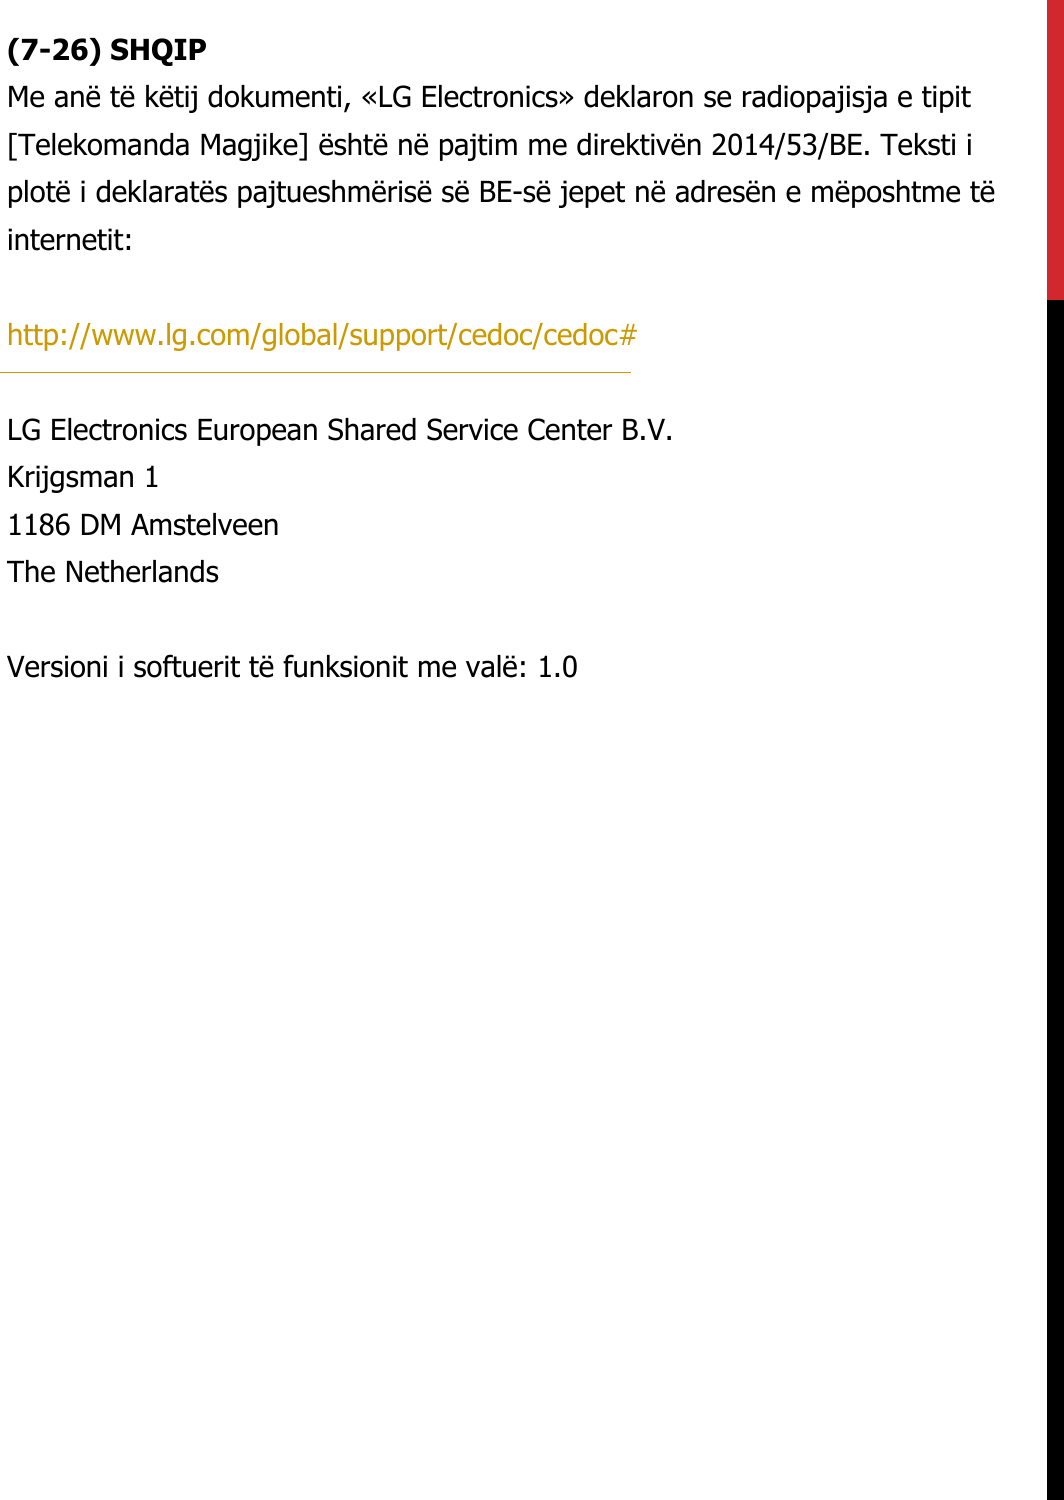 (7-26) SHQIPMe anë të këtij dokumenti, «LG Electronics» deklaron se radiopajisja e tipit  [Telekomanda Magjike] është në pajtim me direktivën 2014/53/BE. Teksti i  plotë i deklaratës pajtueshmërisë së BE-së jepet në adresën e mëposhtme të  internetit:   http://www.lg.com/global/support/cedoc/cedoc#   LG Electronics European Shared Service Center B.V.  Krijgsman 1  1186 DM Amstelveen  The Netherlands   Versioni i softuerit të funksionit me valë: 1.0